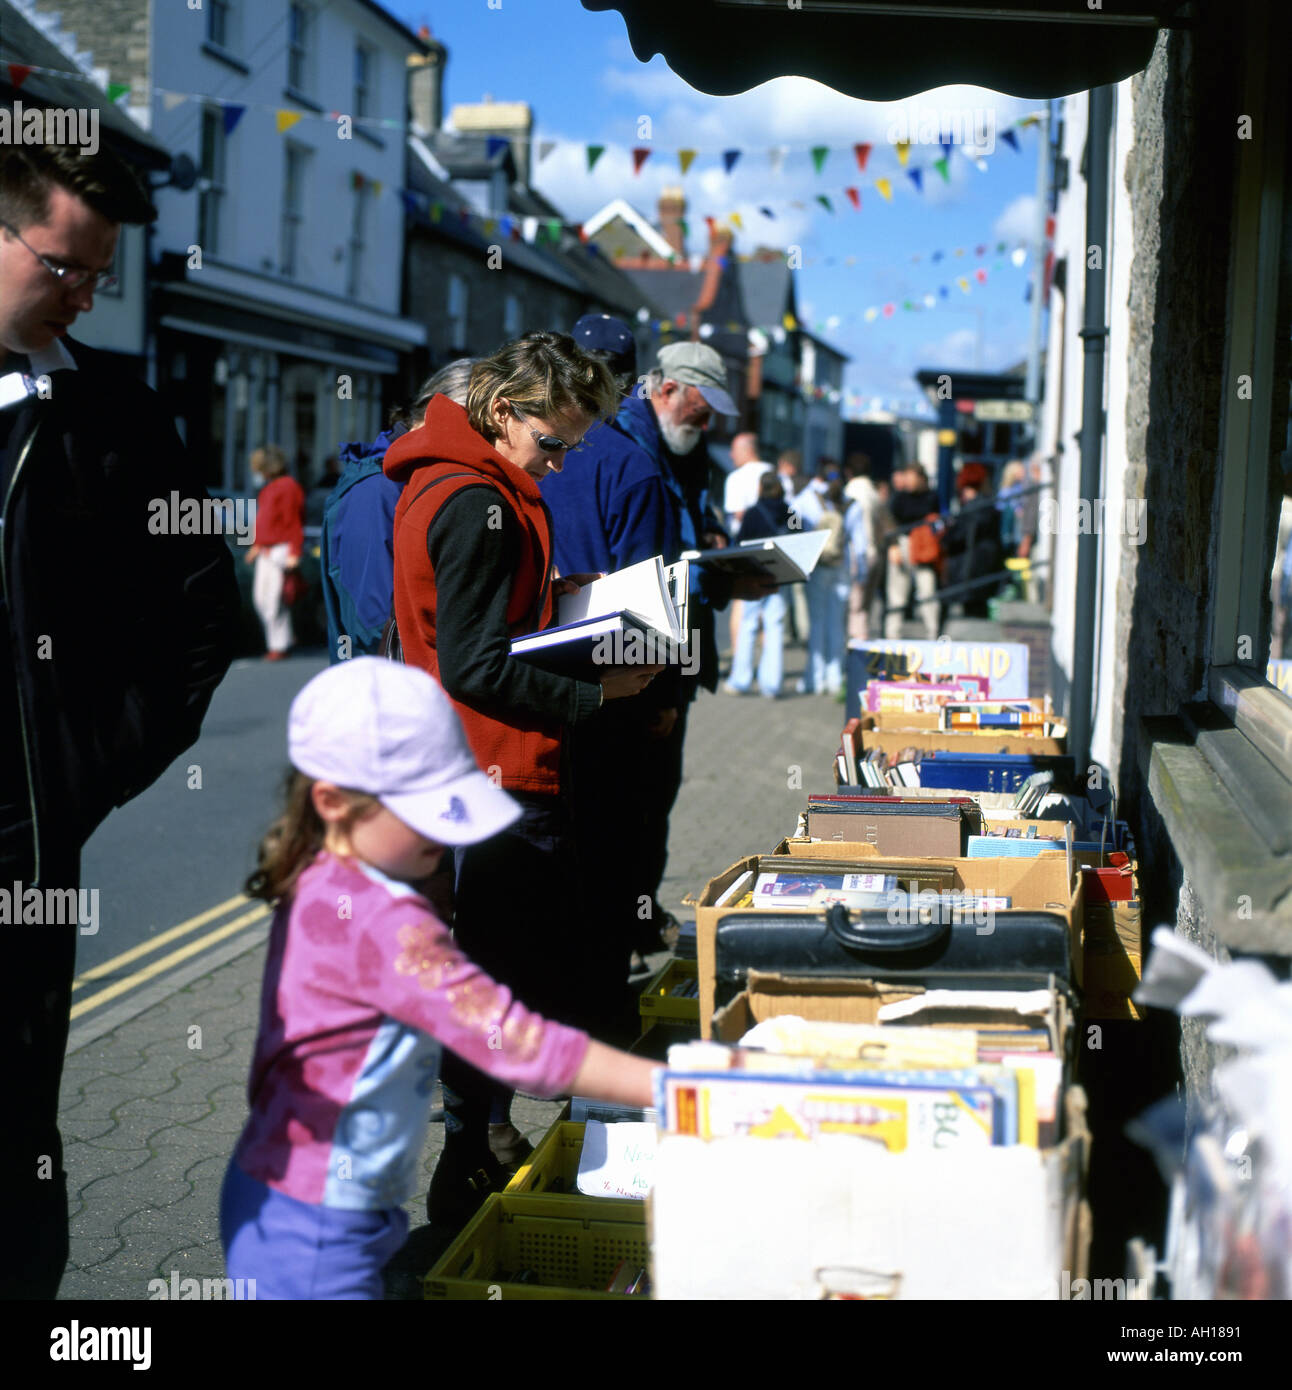 Familie und Kind einkaufen Bücher auf einem Bücherstand außerhalb Hay-on-Wye Buchhandlung anschauen, während das Hay-Festival, Wales, UK KATHY DEWITT Stockfoto